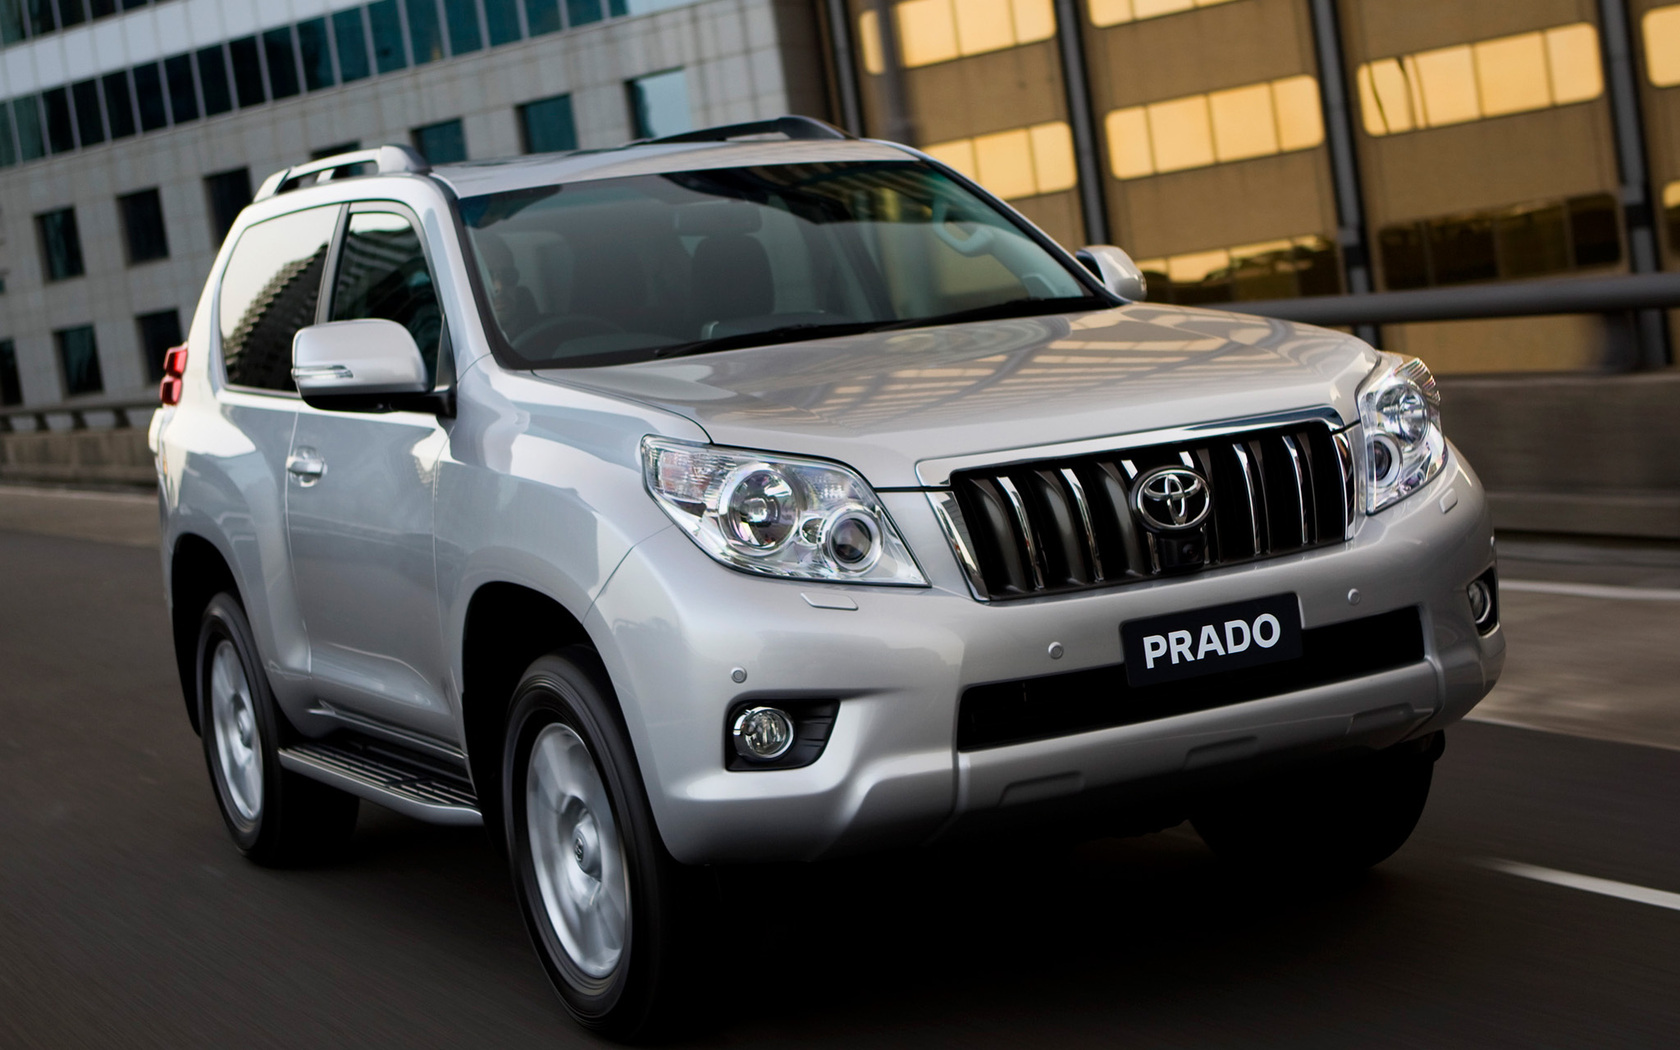 Compare Toyota Land Cruiser Prado with Mitsubishi Pajero Sport in all